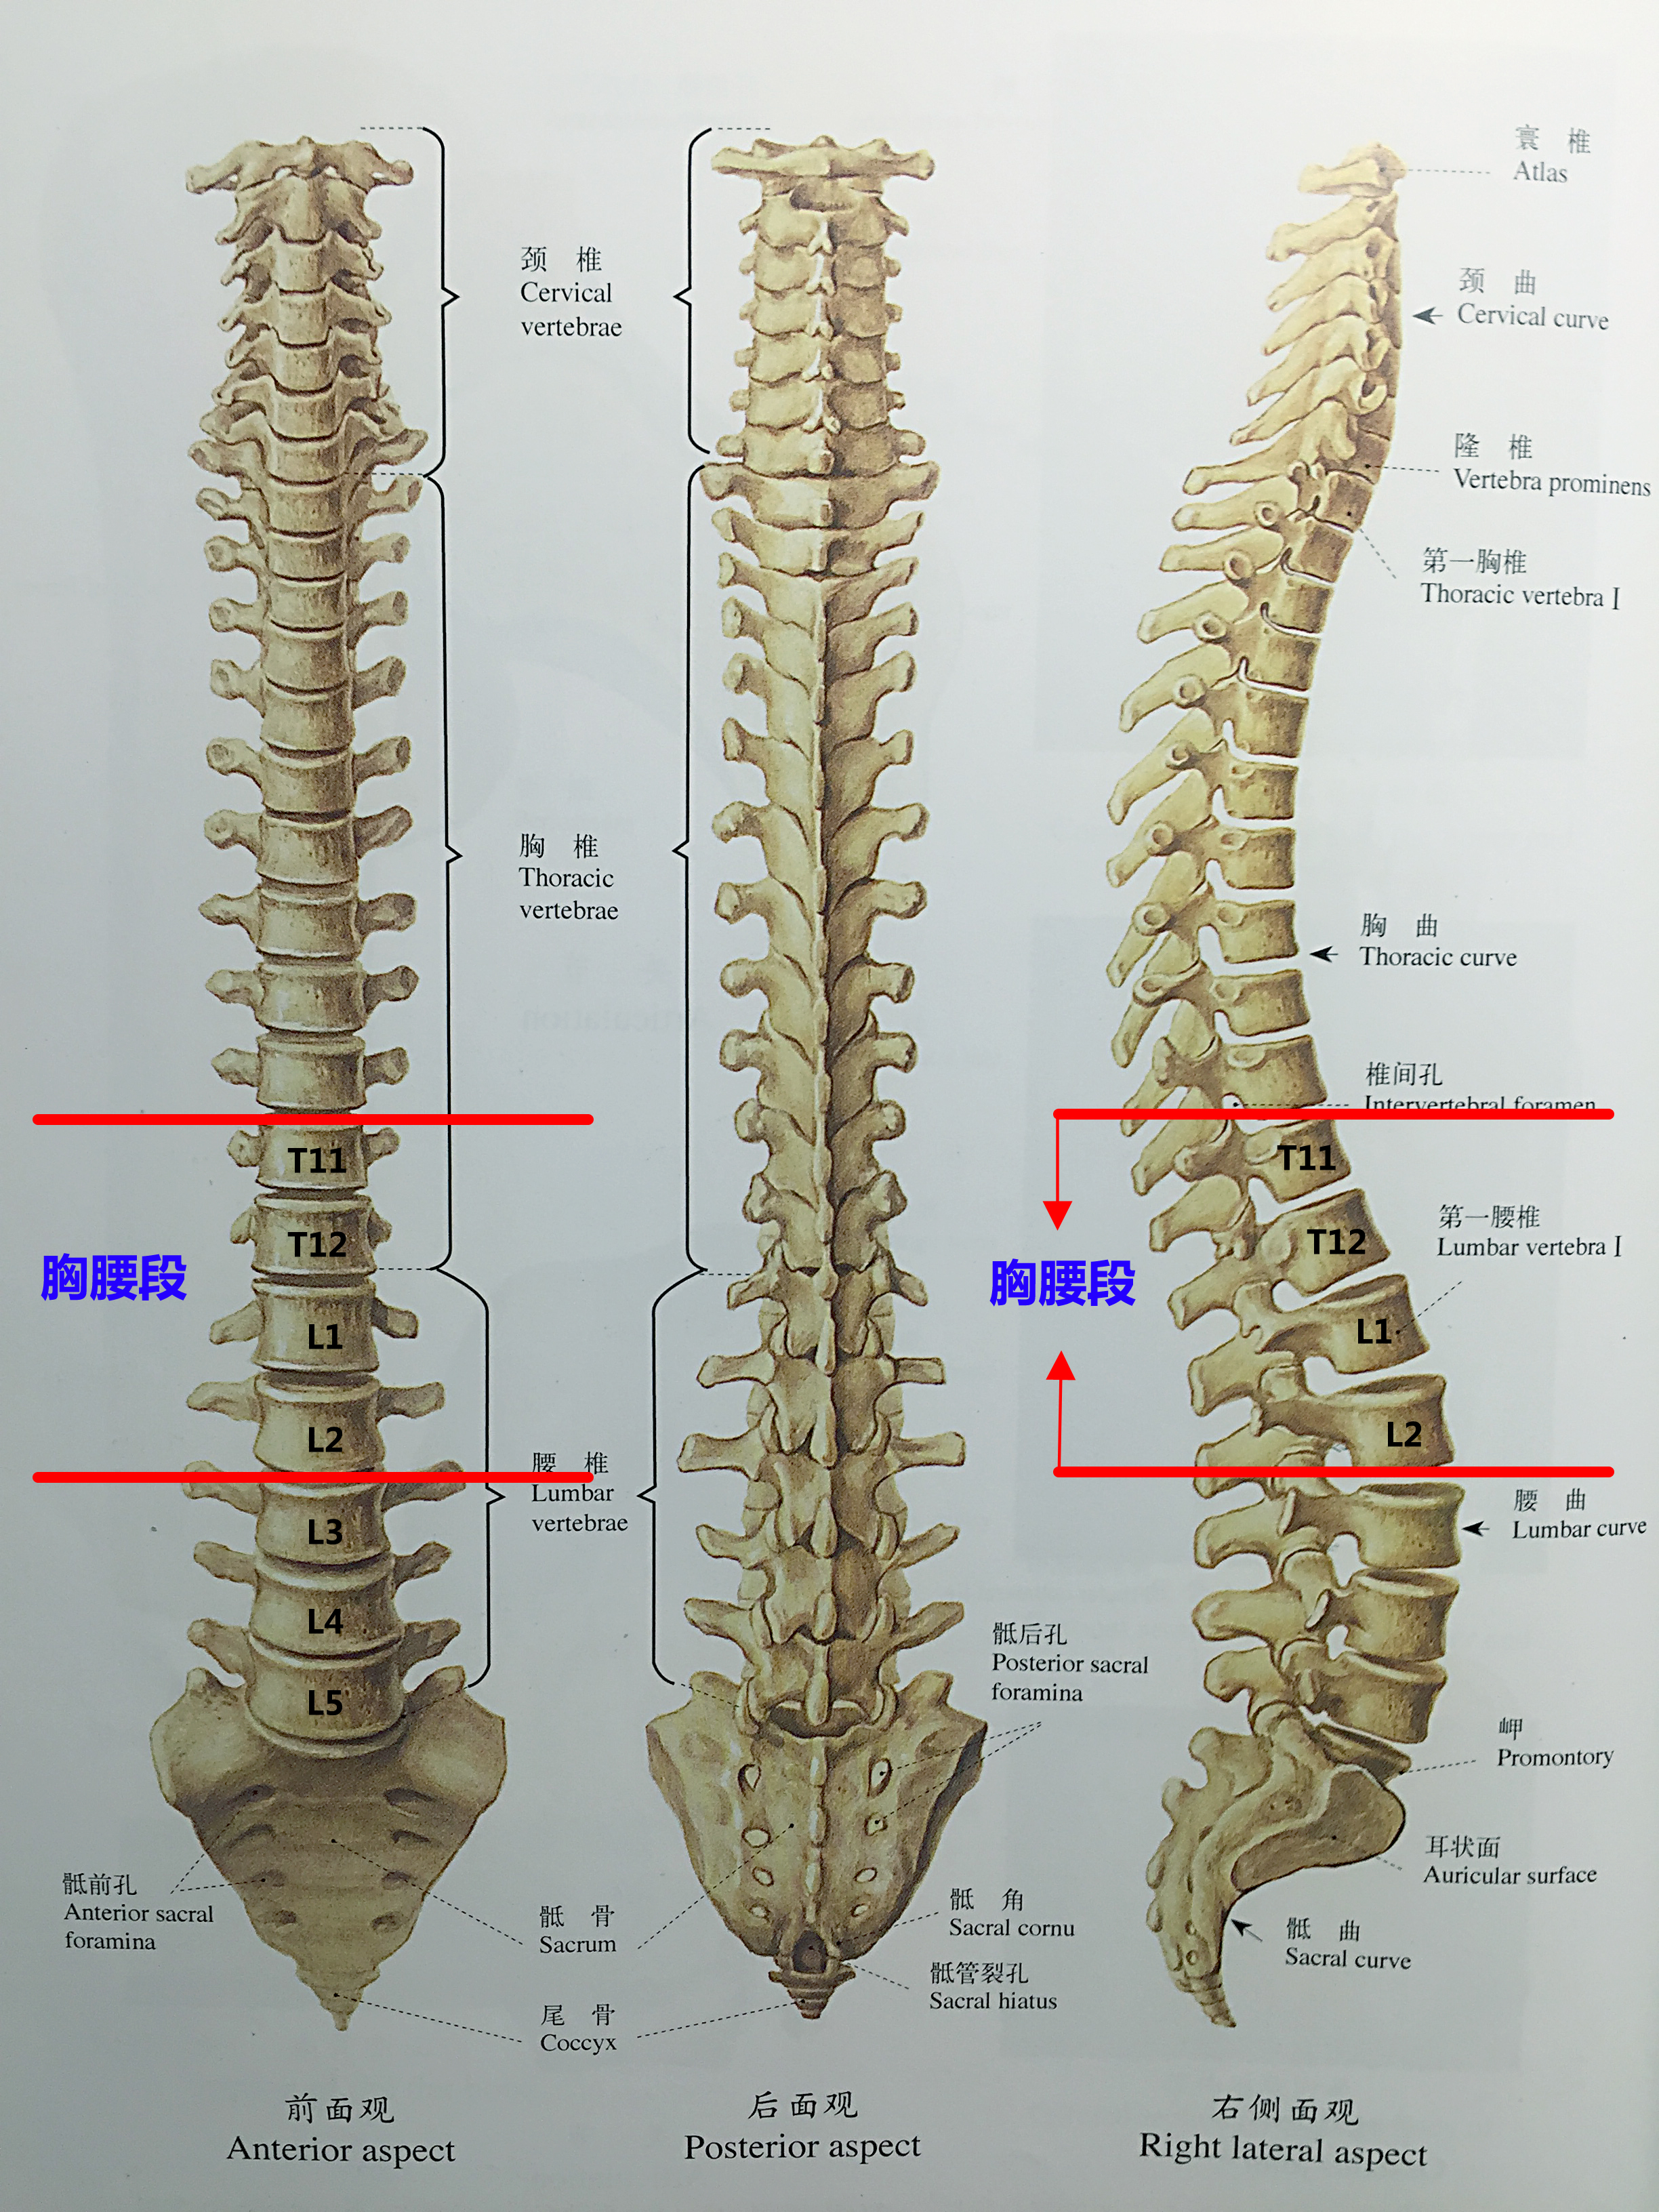 —聊聊胸腰段脊柱骨折的治疗:手术 or 保守?